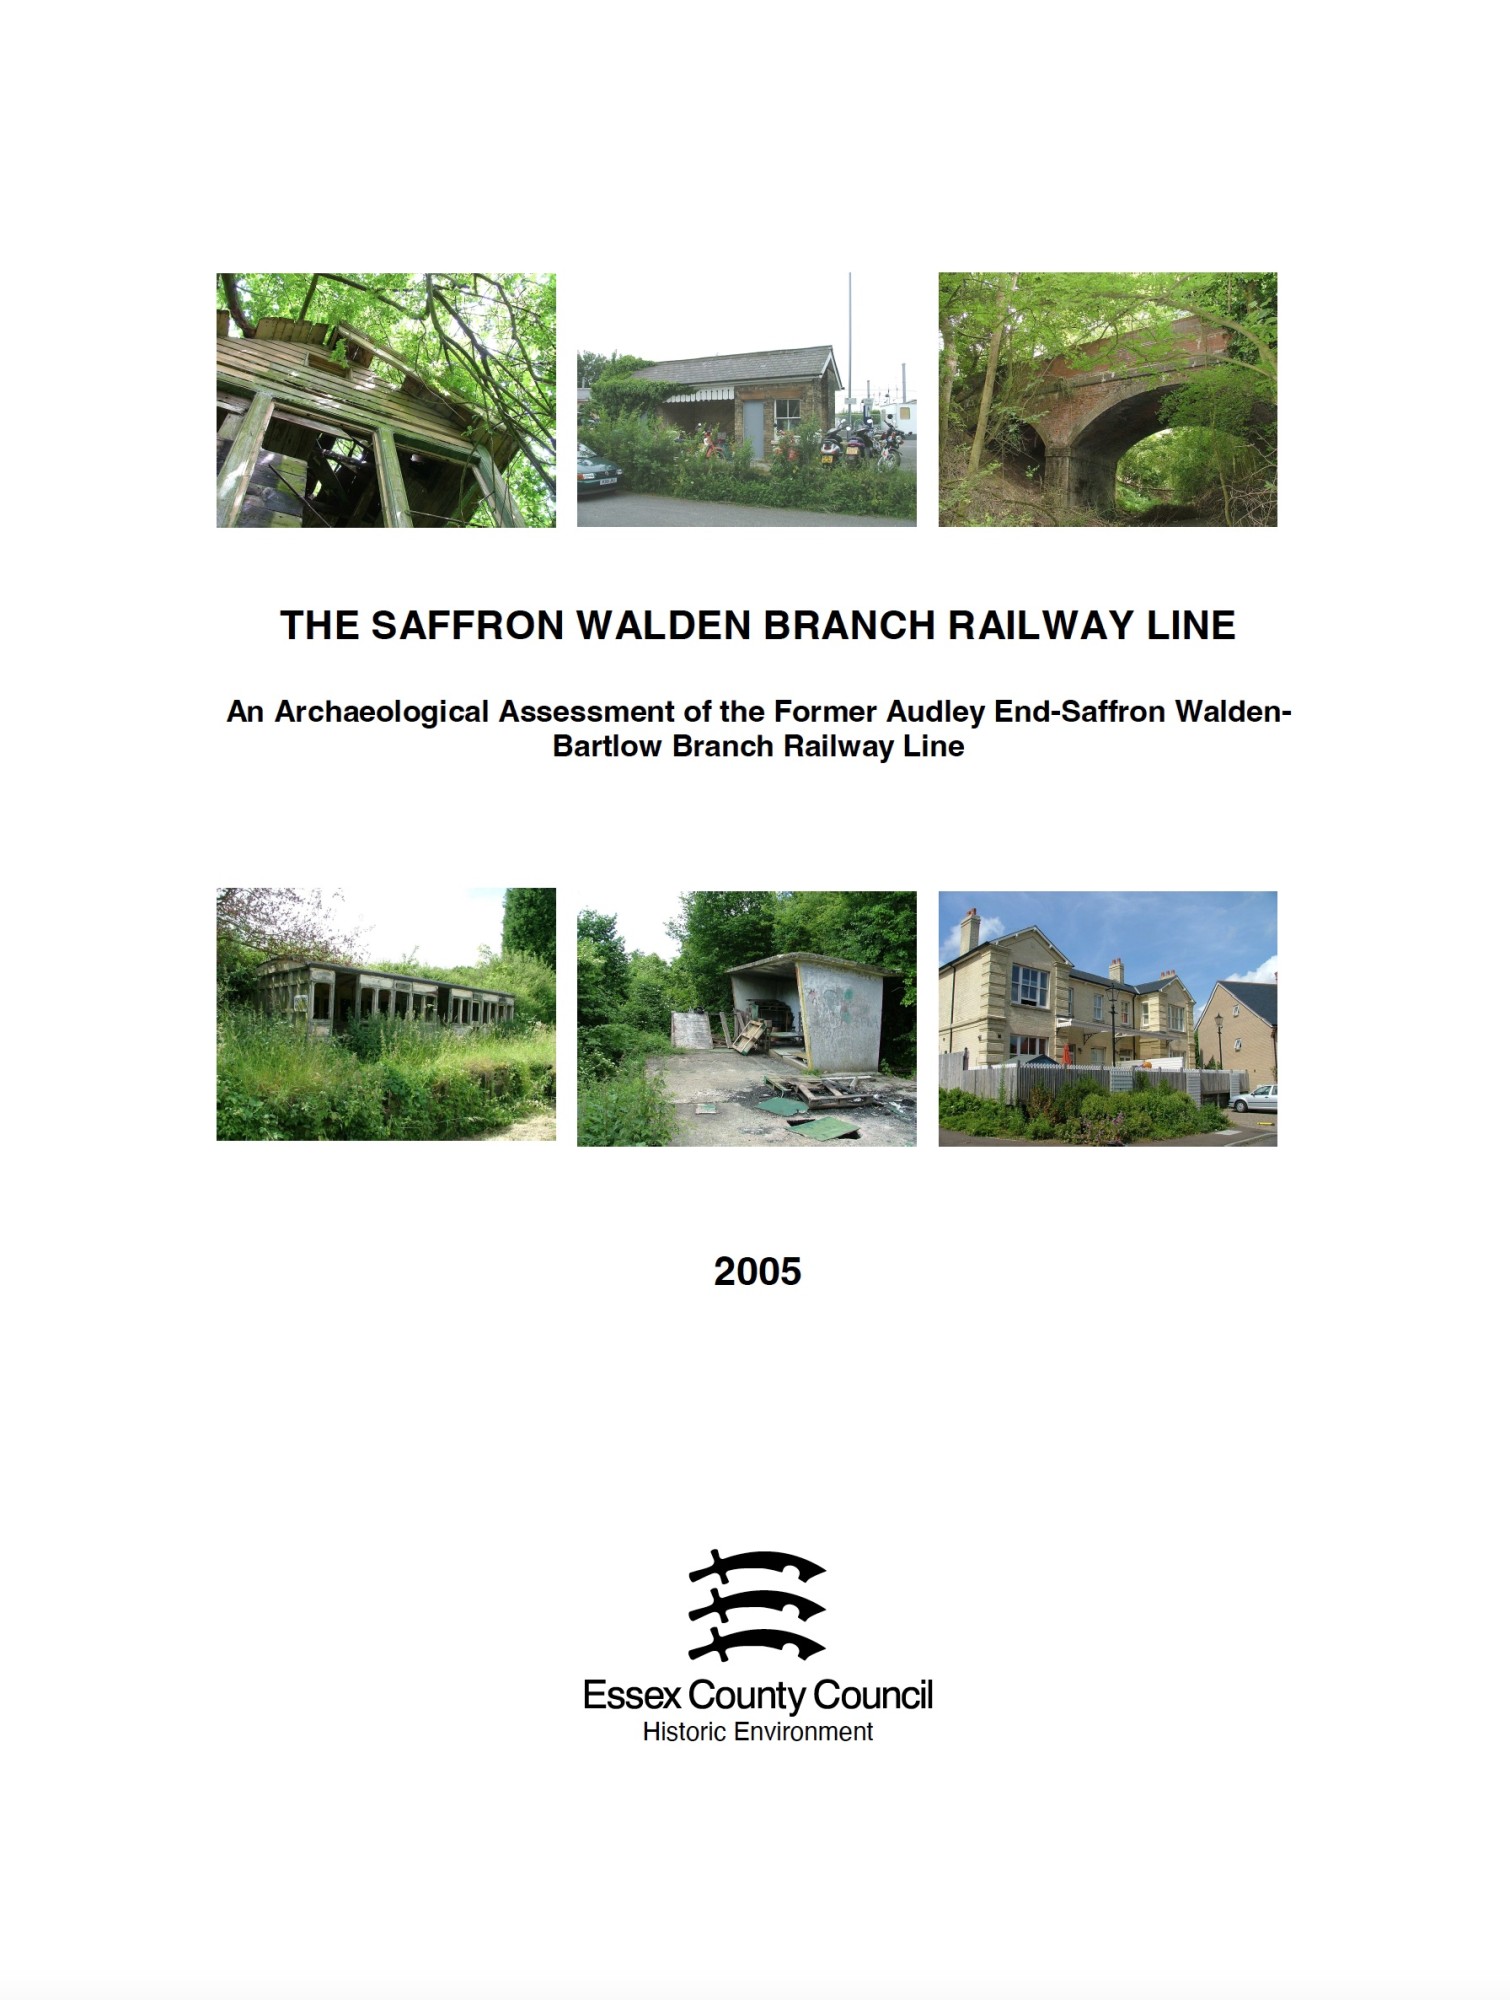 The Saffron Walden Branch Railway Line (2005) eiag illustration 1